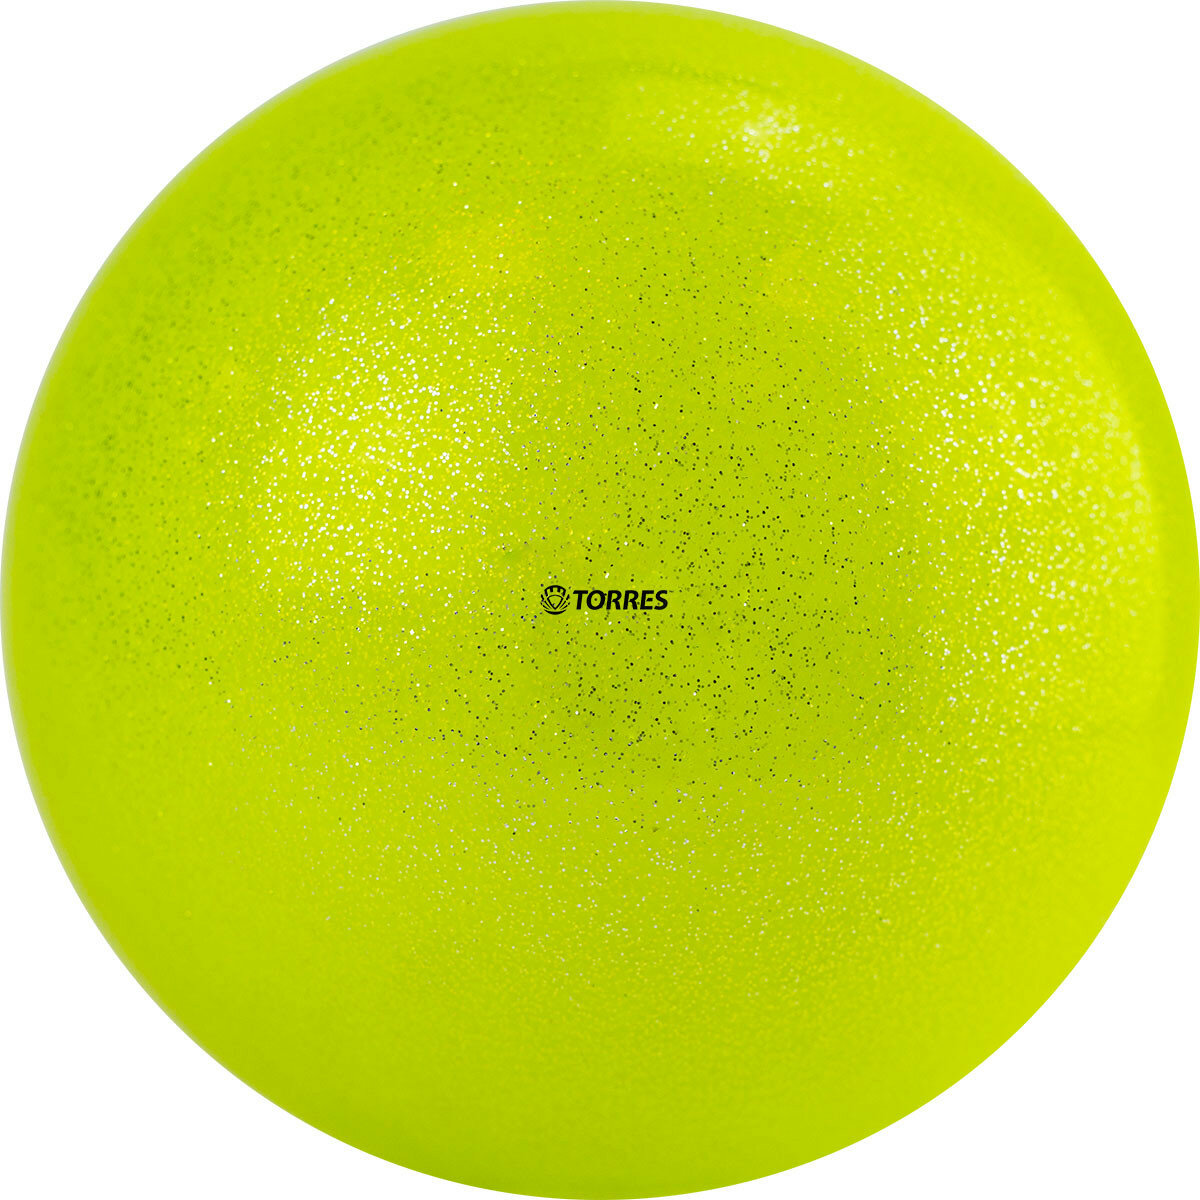 Мяч для художественной гимнастики Torres Agp-19-03, диаметр 19см, желтый с блестками